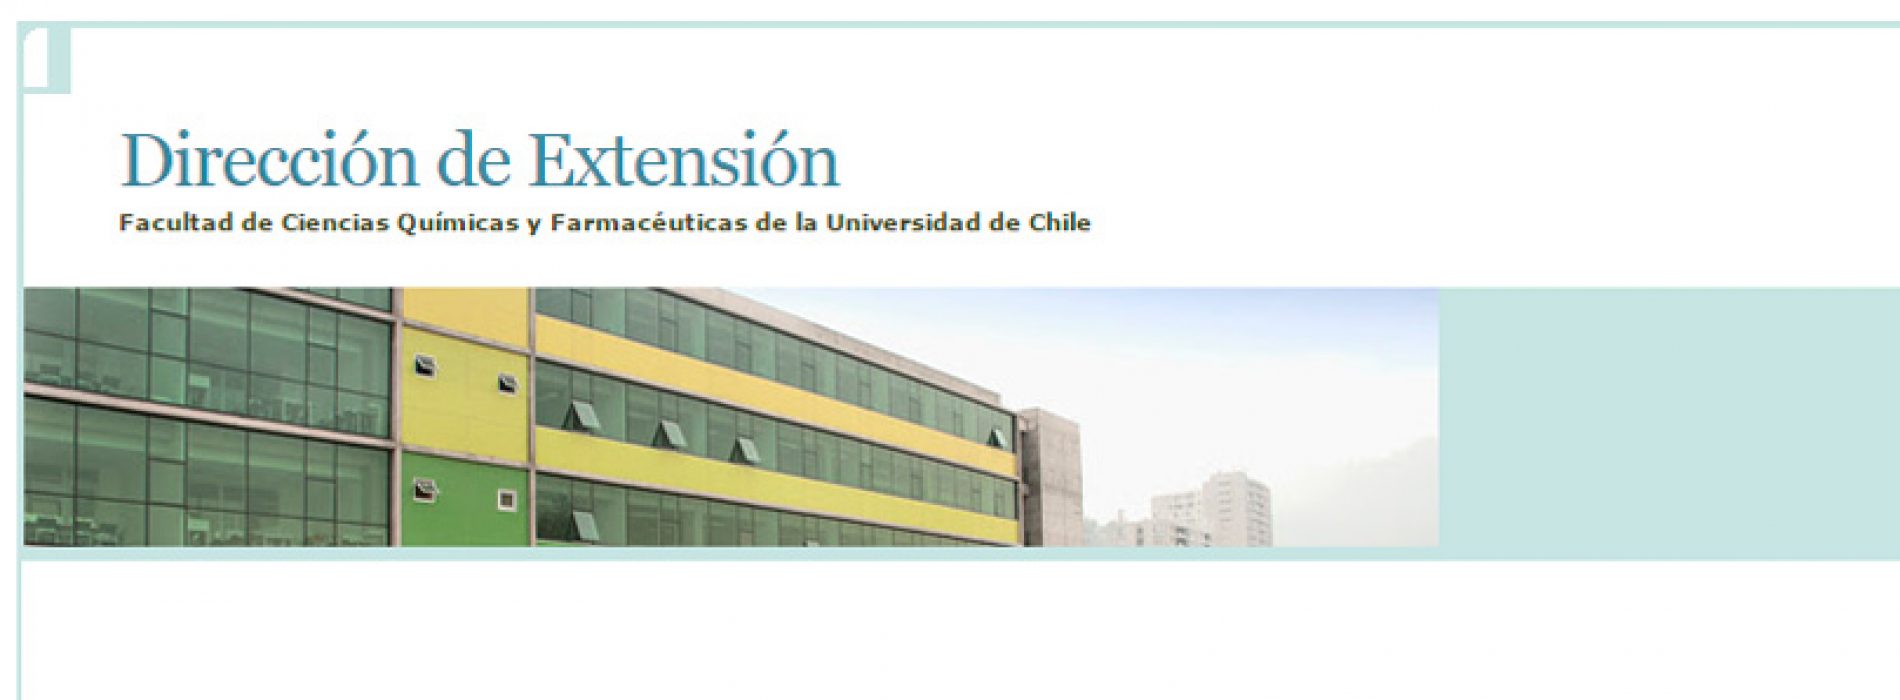 Charlas 72 aniversario Facultad de Ciencias Químicas y Farmacéuticas de la Universidad de Chile